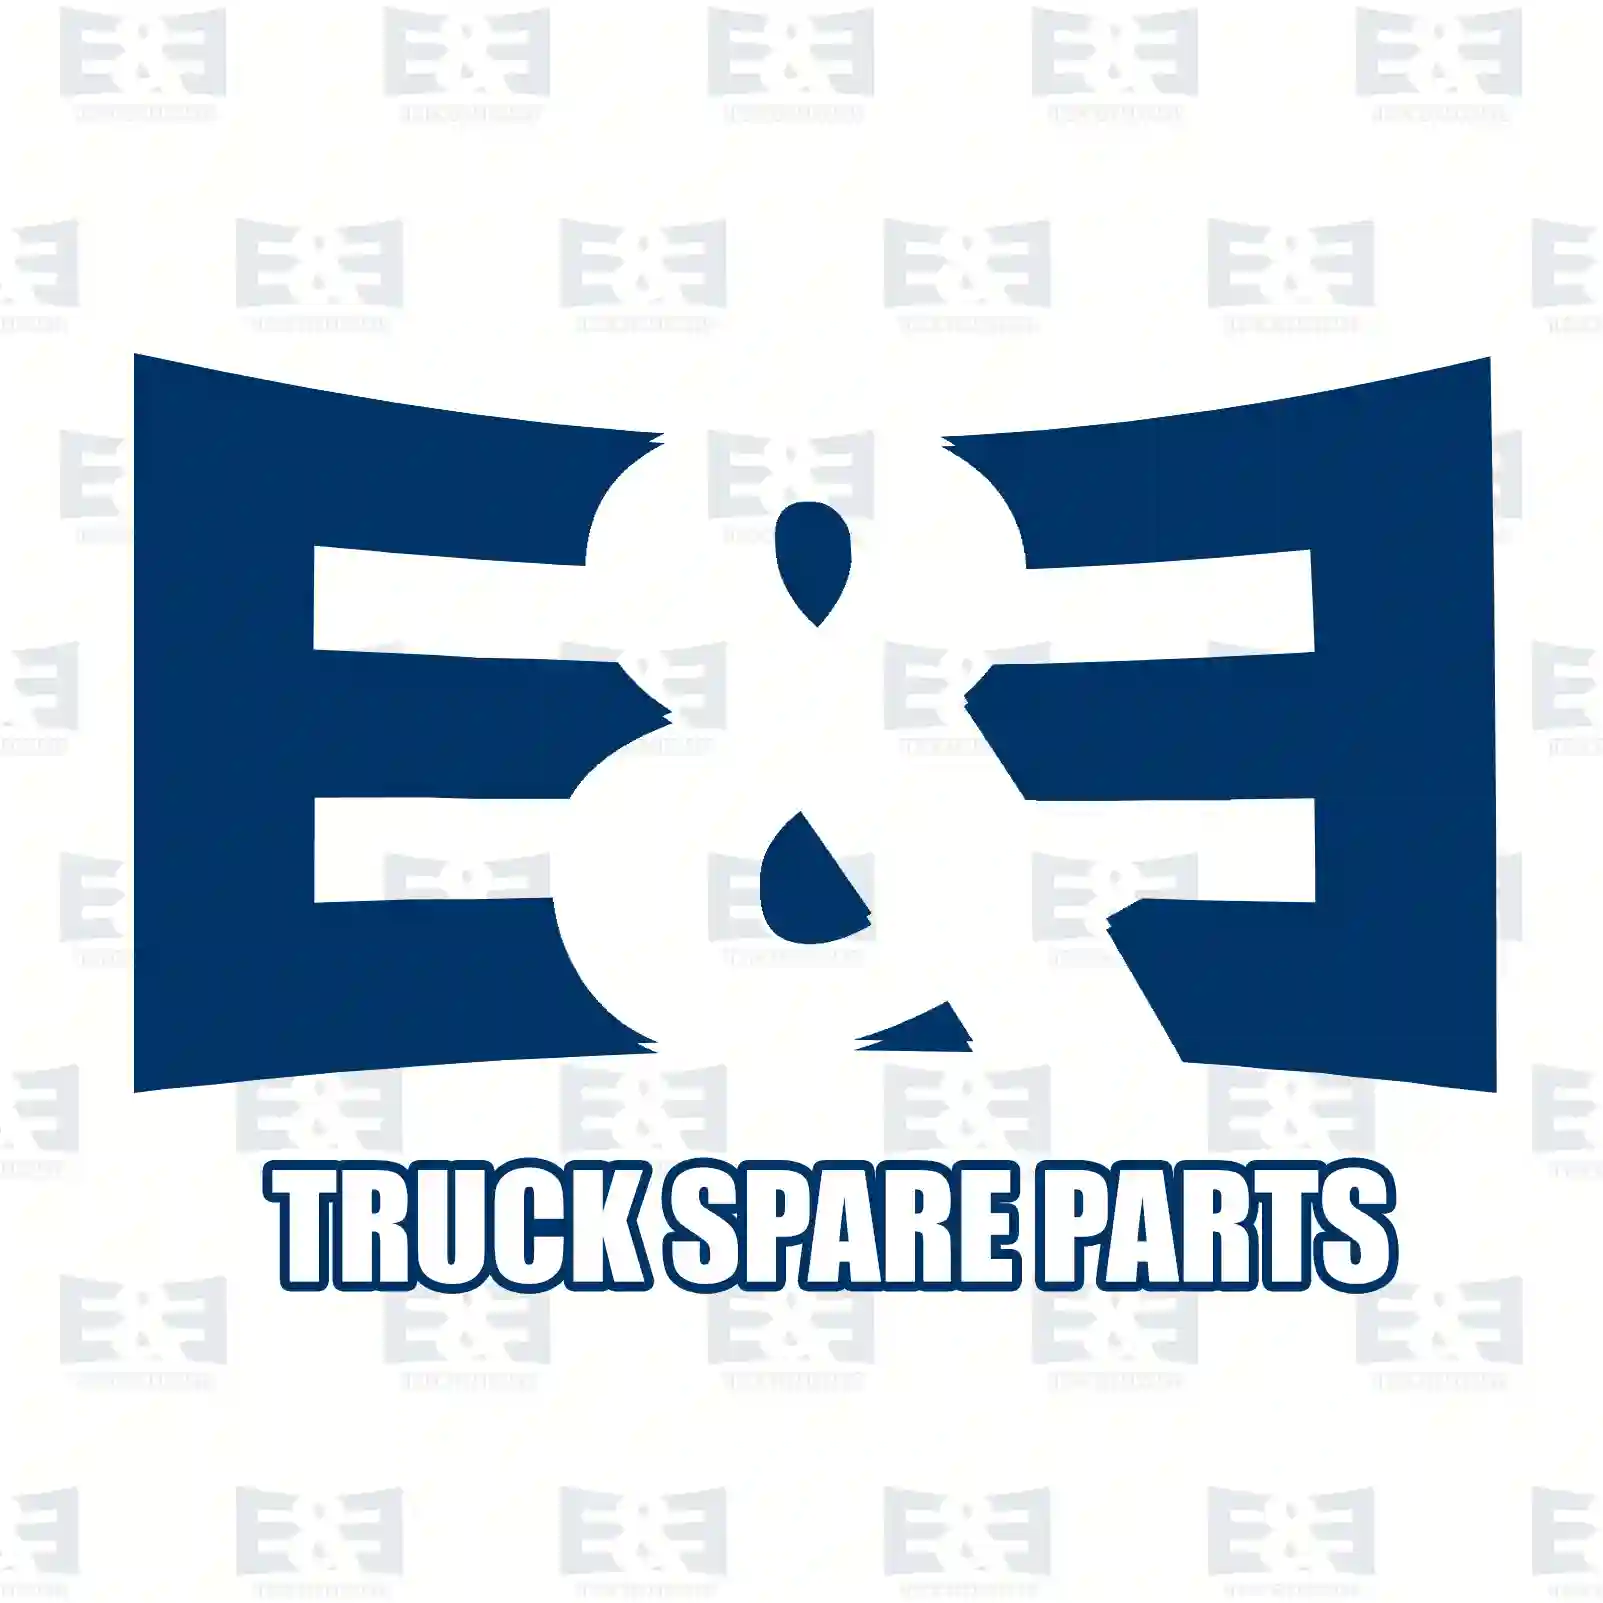 Brake disc, 2E2294960, 3095672, 68323232, , , , , , , ||  2E2294960 E&E Truck Spare Parts | Truck Spare Parts, Auotomotive Spare Parts Brake disc, 2E2294960, 3095672, 68323232, , , , , , , ||  2E2294960 E&E Truck Spare Parts | Truck Spare Parts, Auotomotive Spare Parts